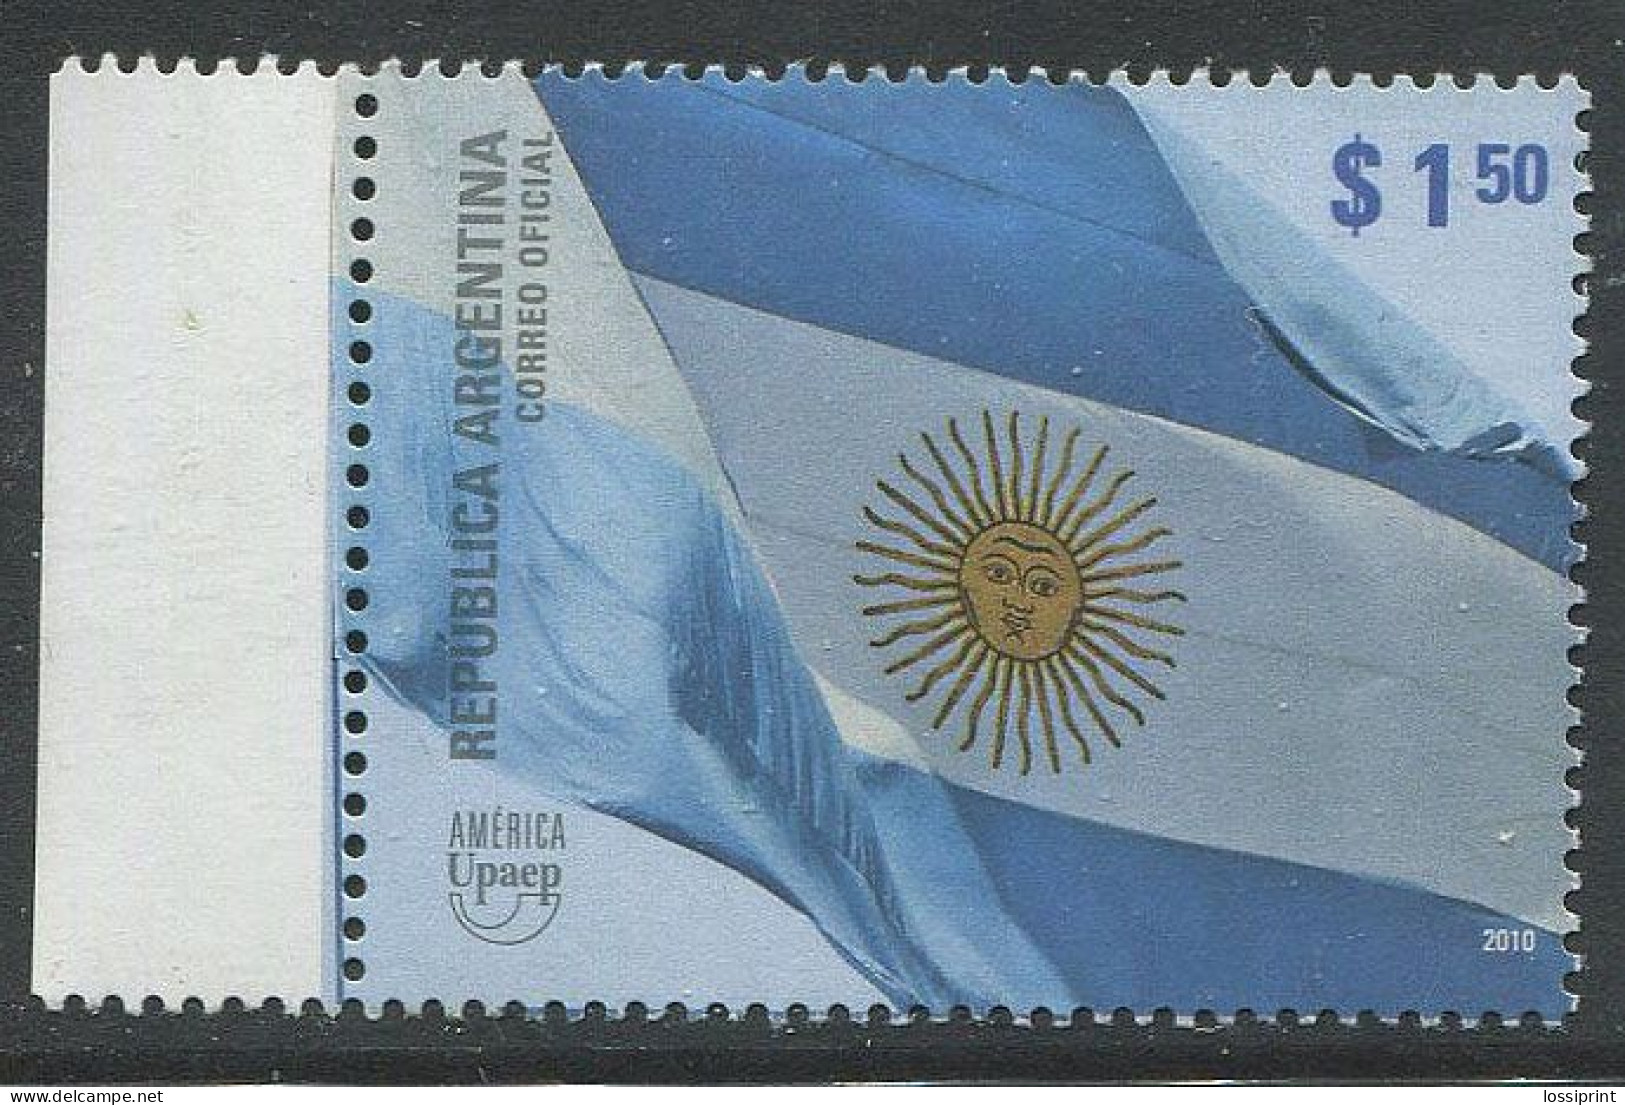 Argentina:Unused Stamp America UPAEP, 2010, MNH - Nuevos